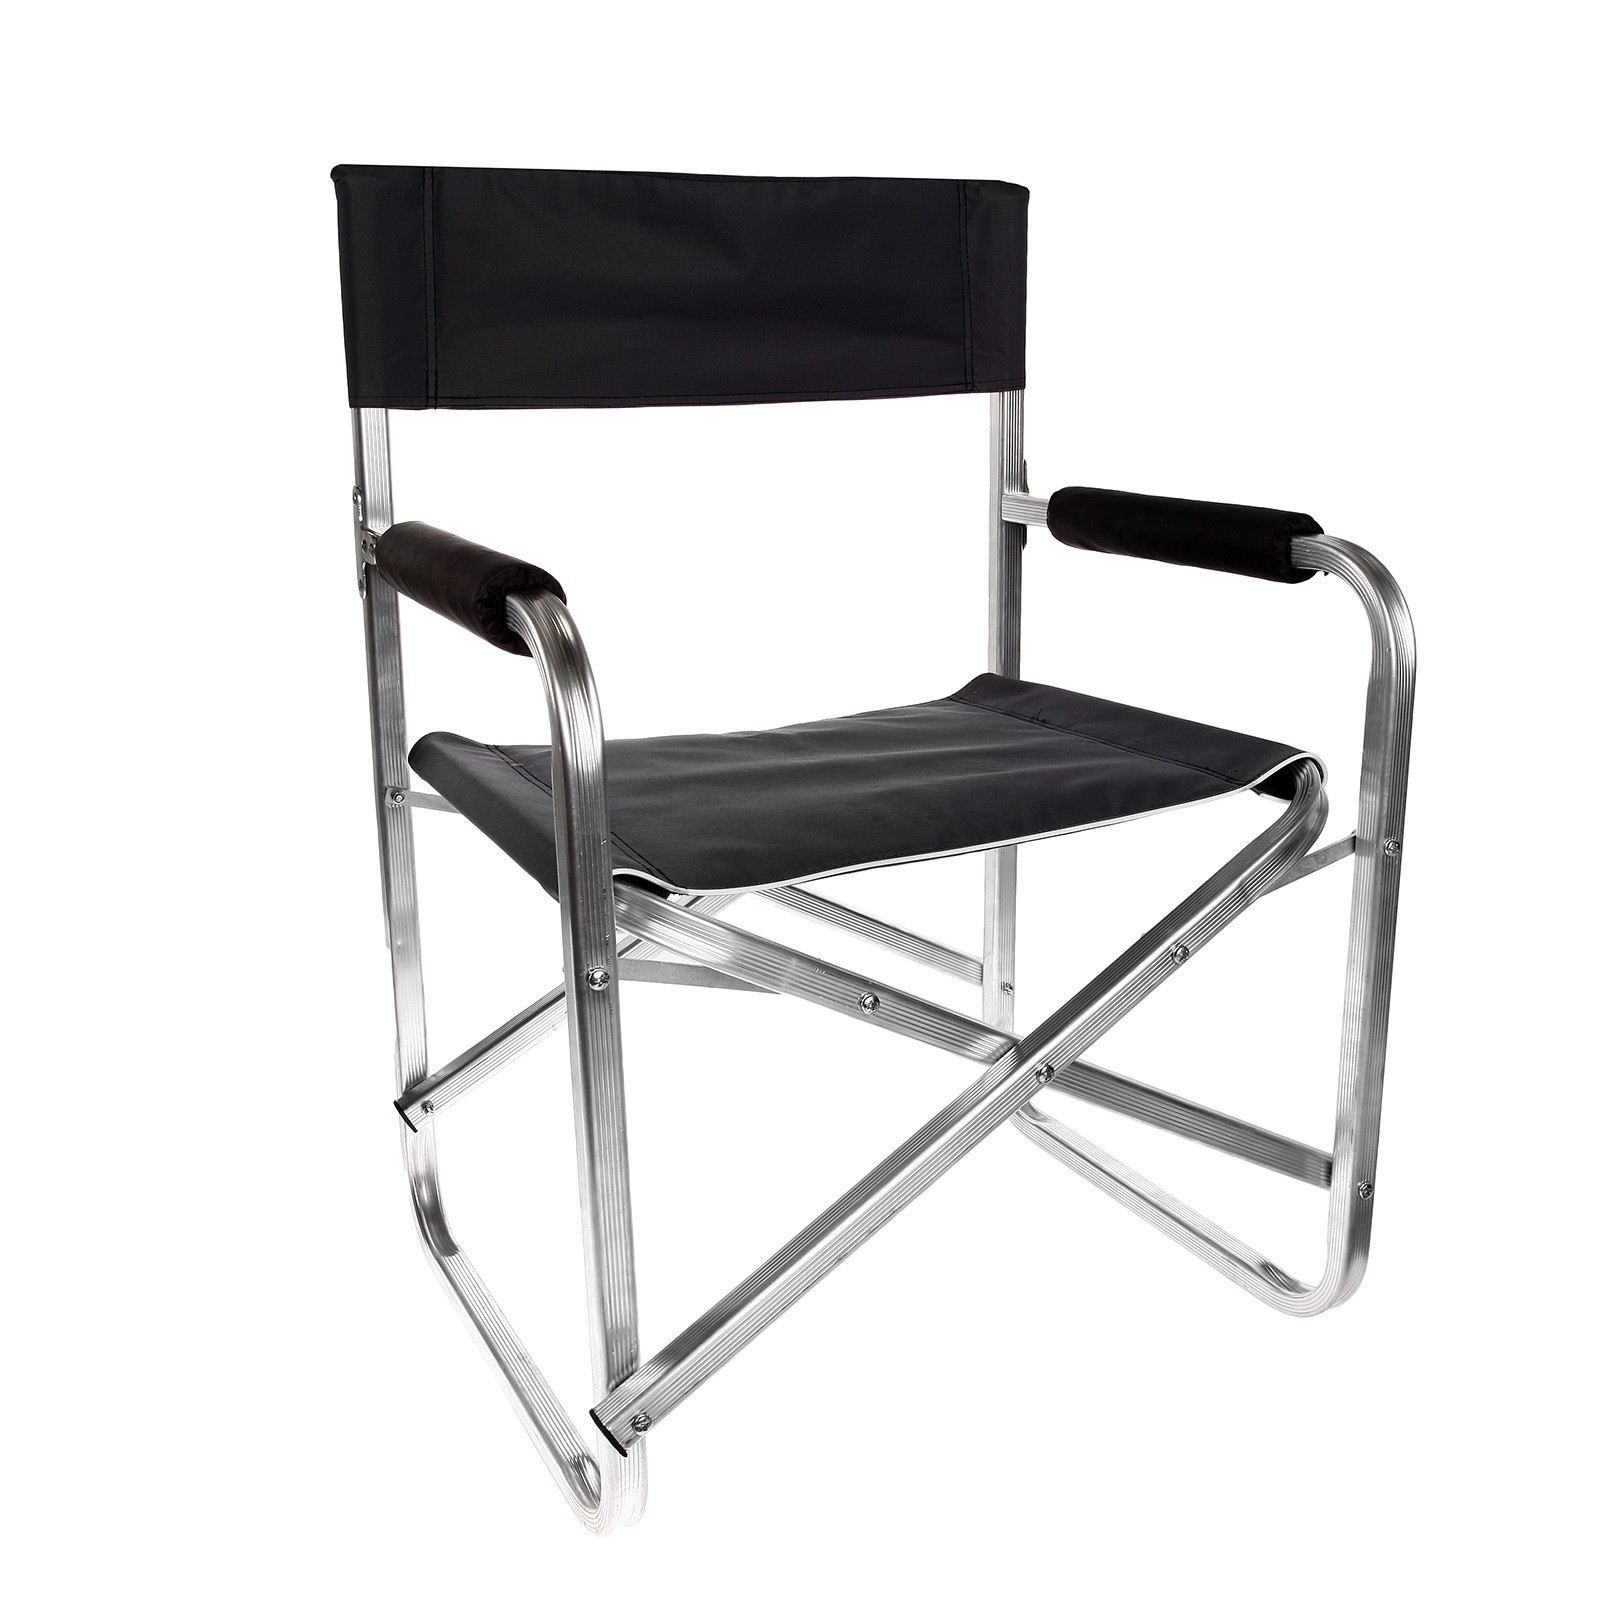 Кресло нагрузка 200 кг. 700014 Кресло складное / a001. Кресло Indiana indi-033. Кресло складное Hy-8007. Кресло медведь d25 алюминиевое, складное.